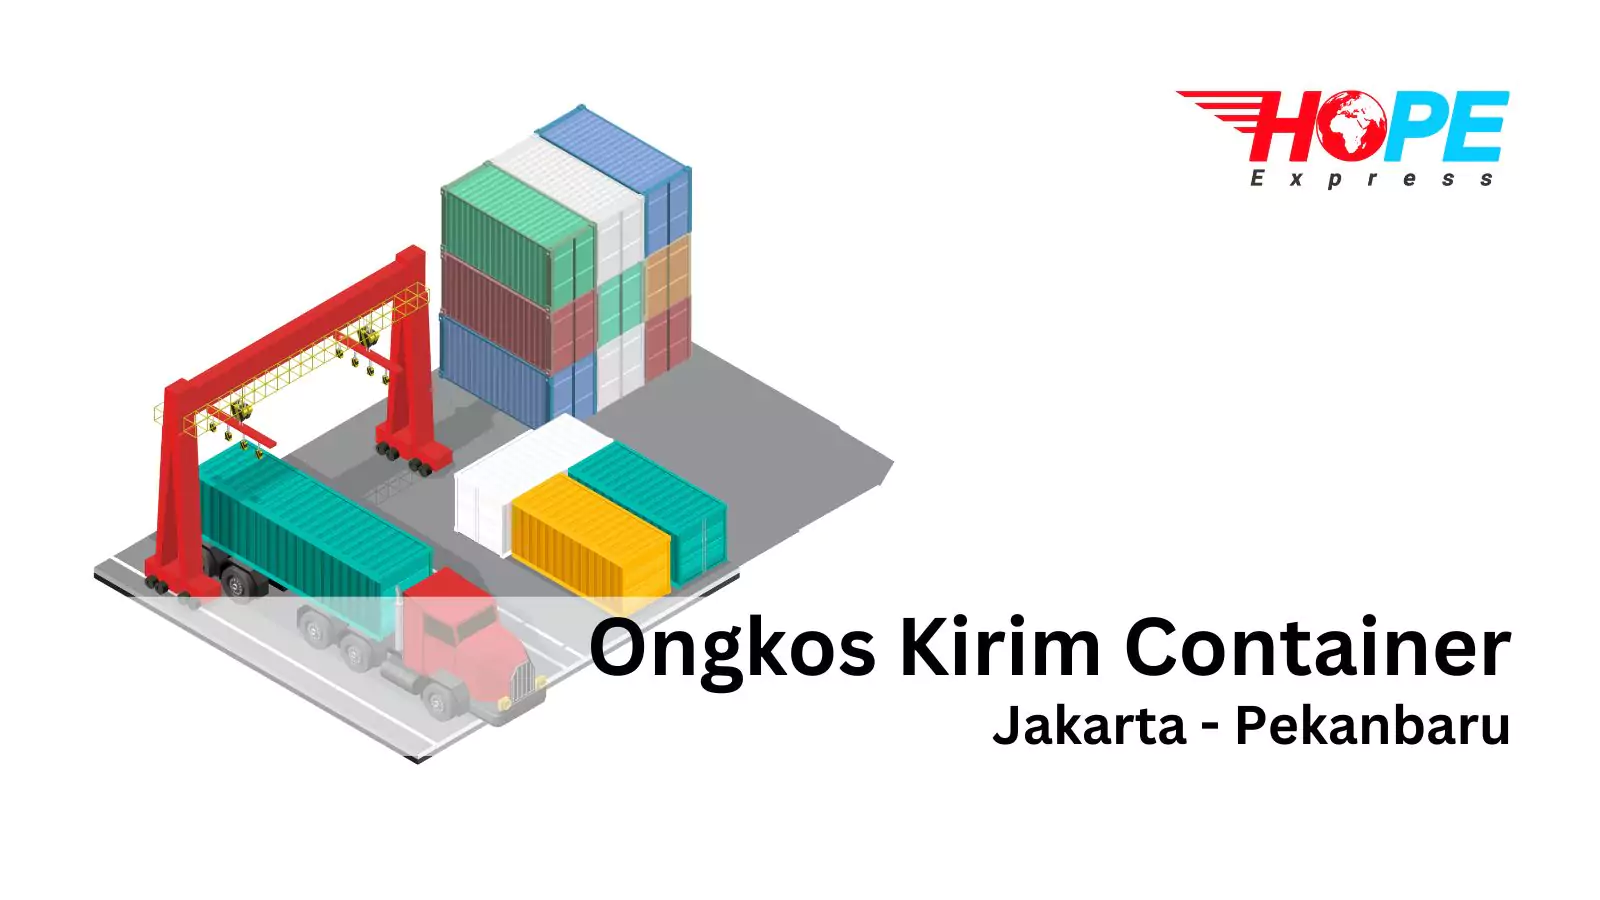 Ongkos Kirim Container Jakarta Pekanbaru